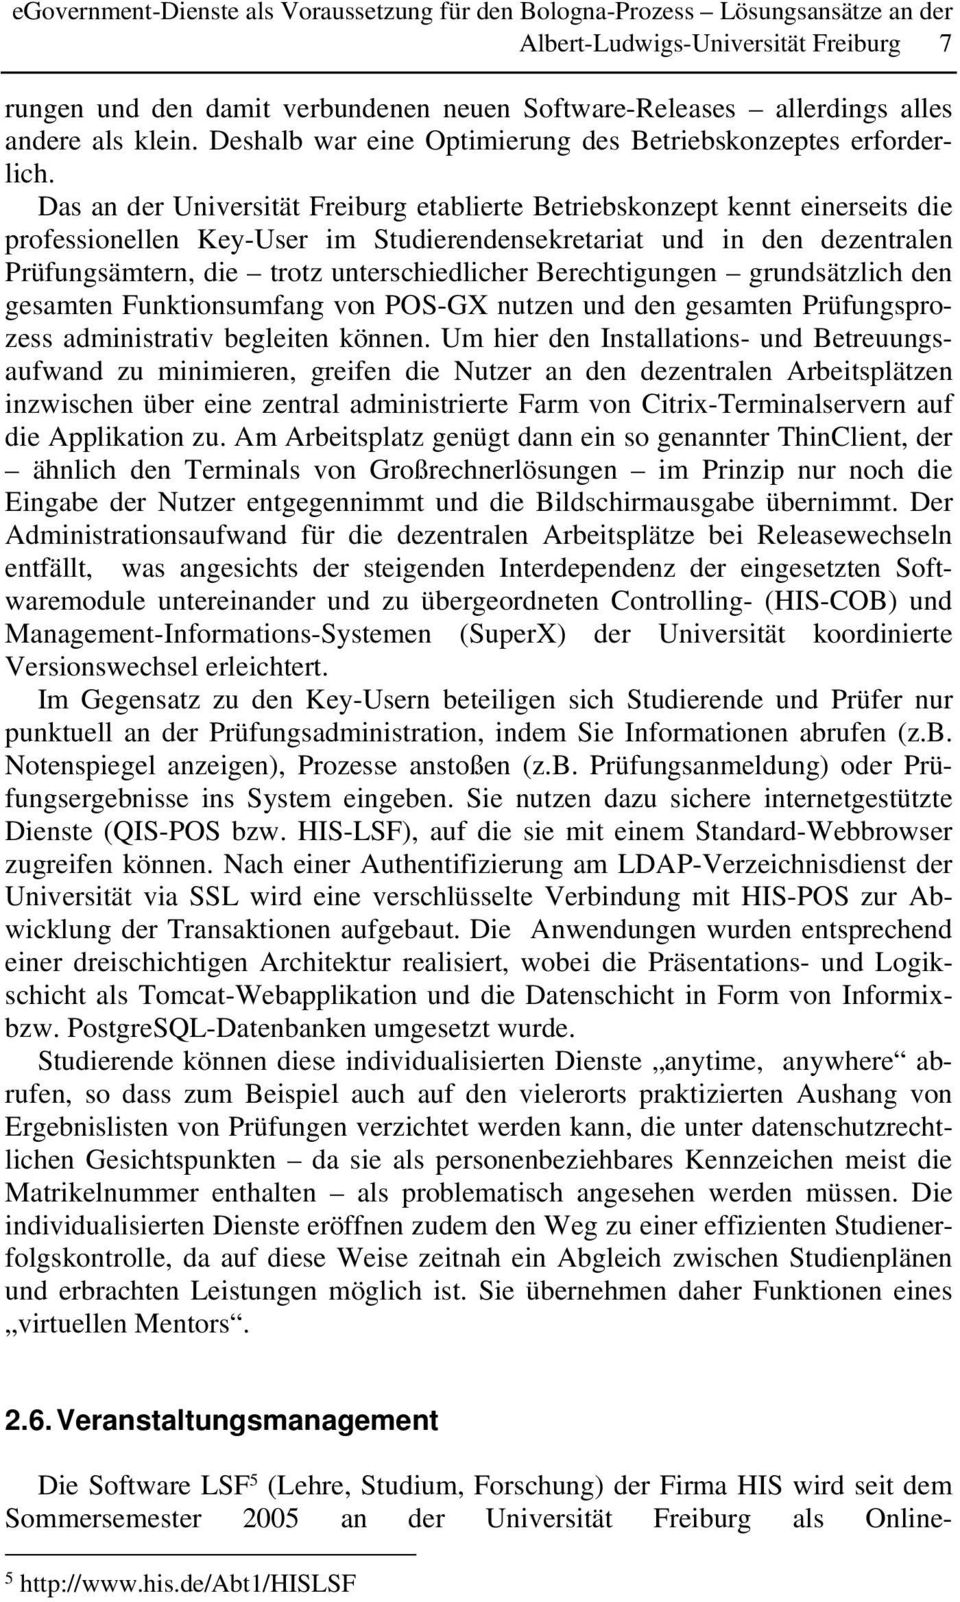 Das an der Universität Freiburg etablierte Betriebskonzept kennt einerseits die professionellen Key-User im Studierendensekretariat und in den dezentralen Prüfungsämtern, die trotz unterschiedlicher